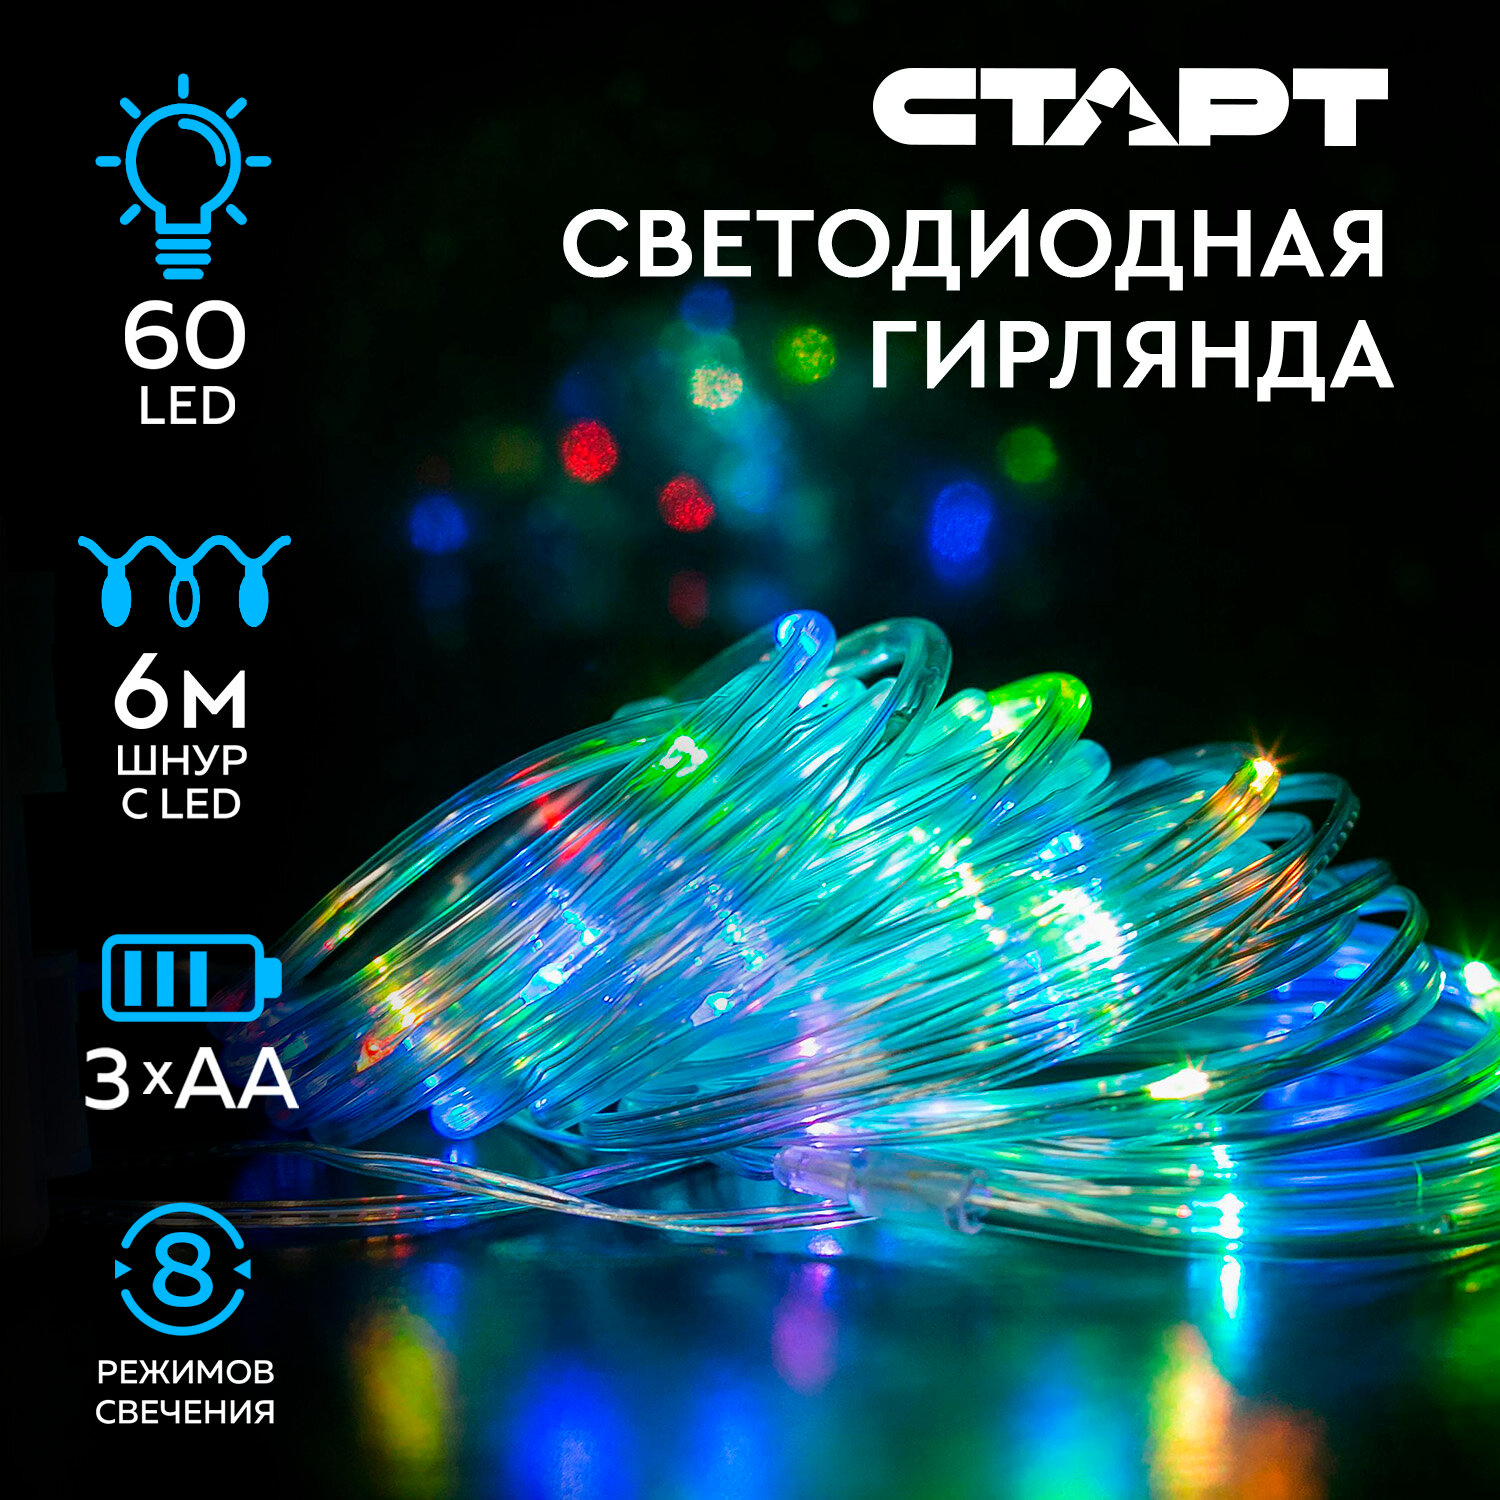 Гирлянда уличная светодиодная новогодняя лента старт, 60 LED, на батарейках АА, 8 режимов, 6 м, на елку